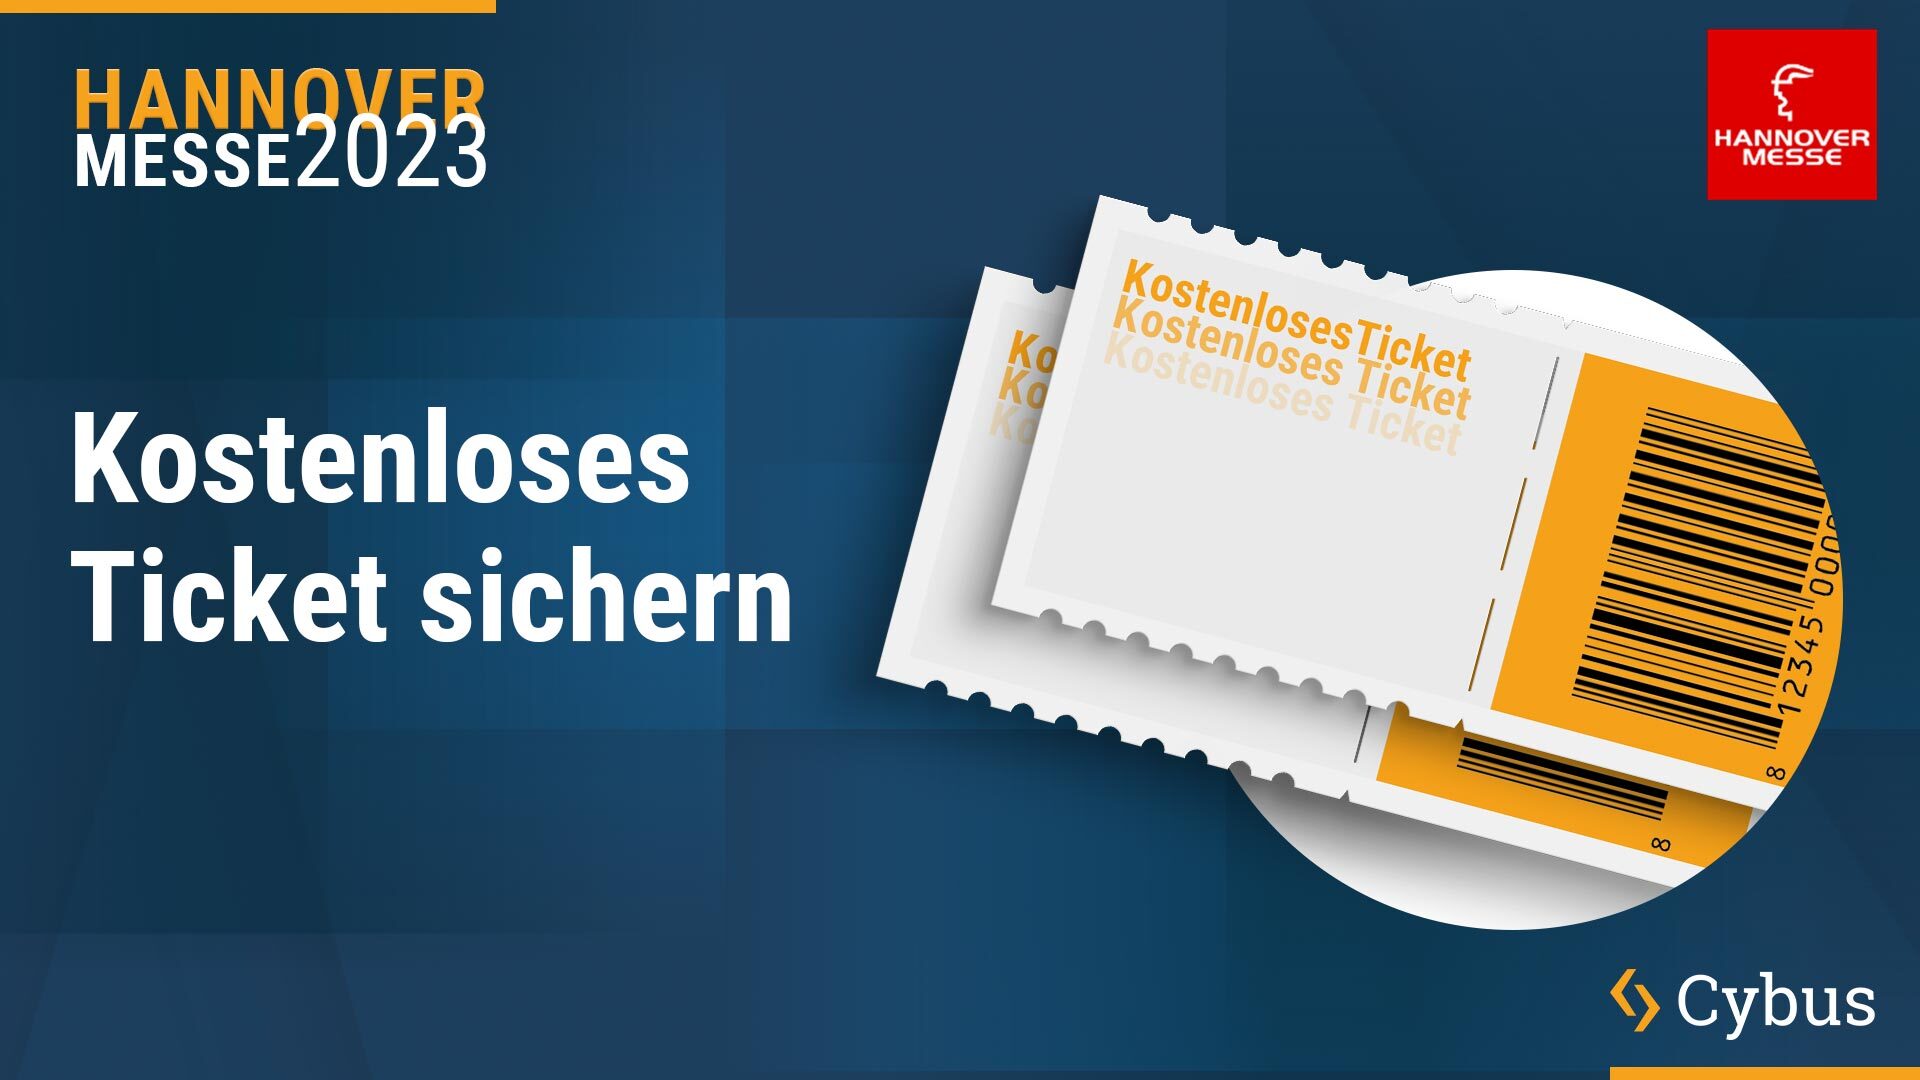 Ticket für die Hannover Messe 2023 Kostenlos auf Cybus.io